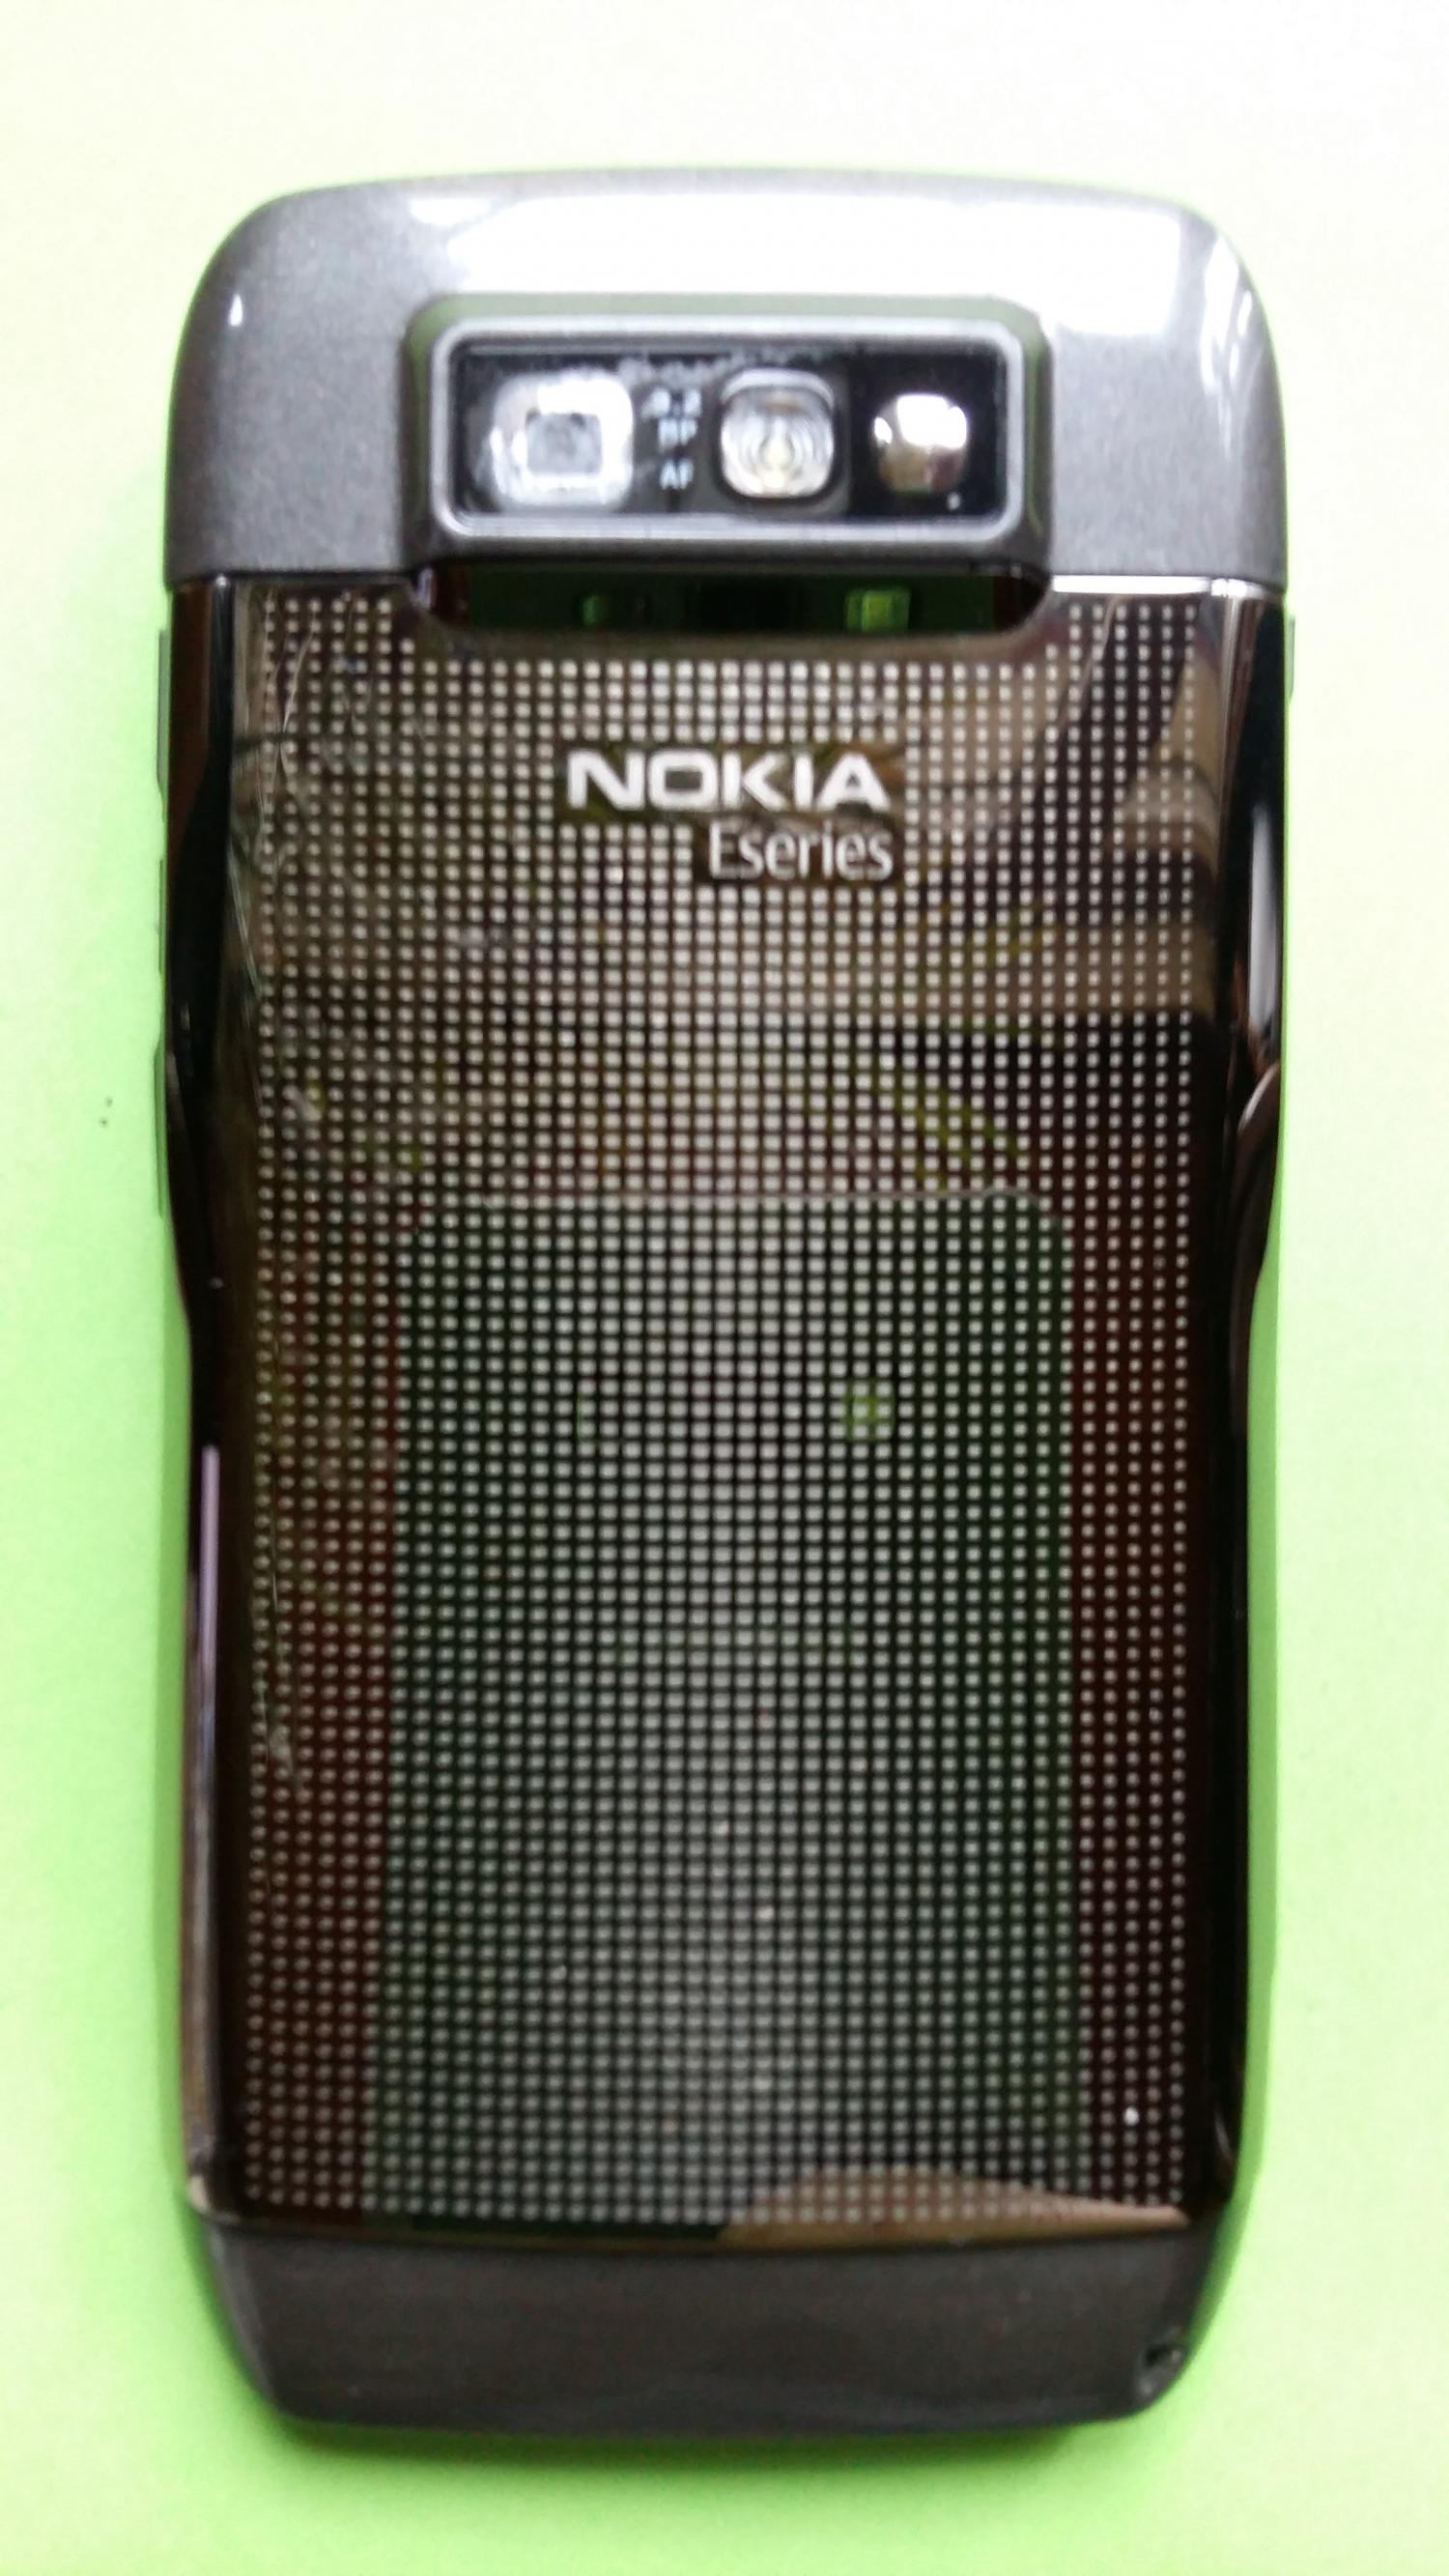 image-7307735-Nokia E71-1 (1)2.jpg